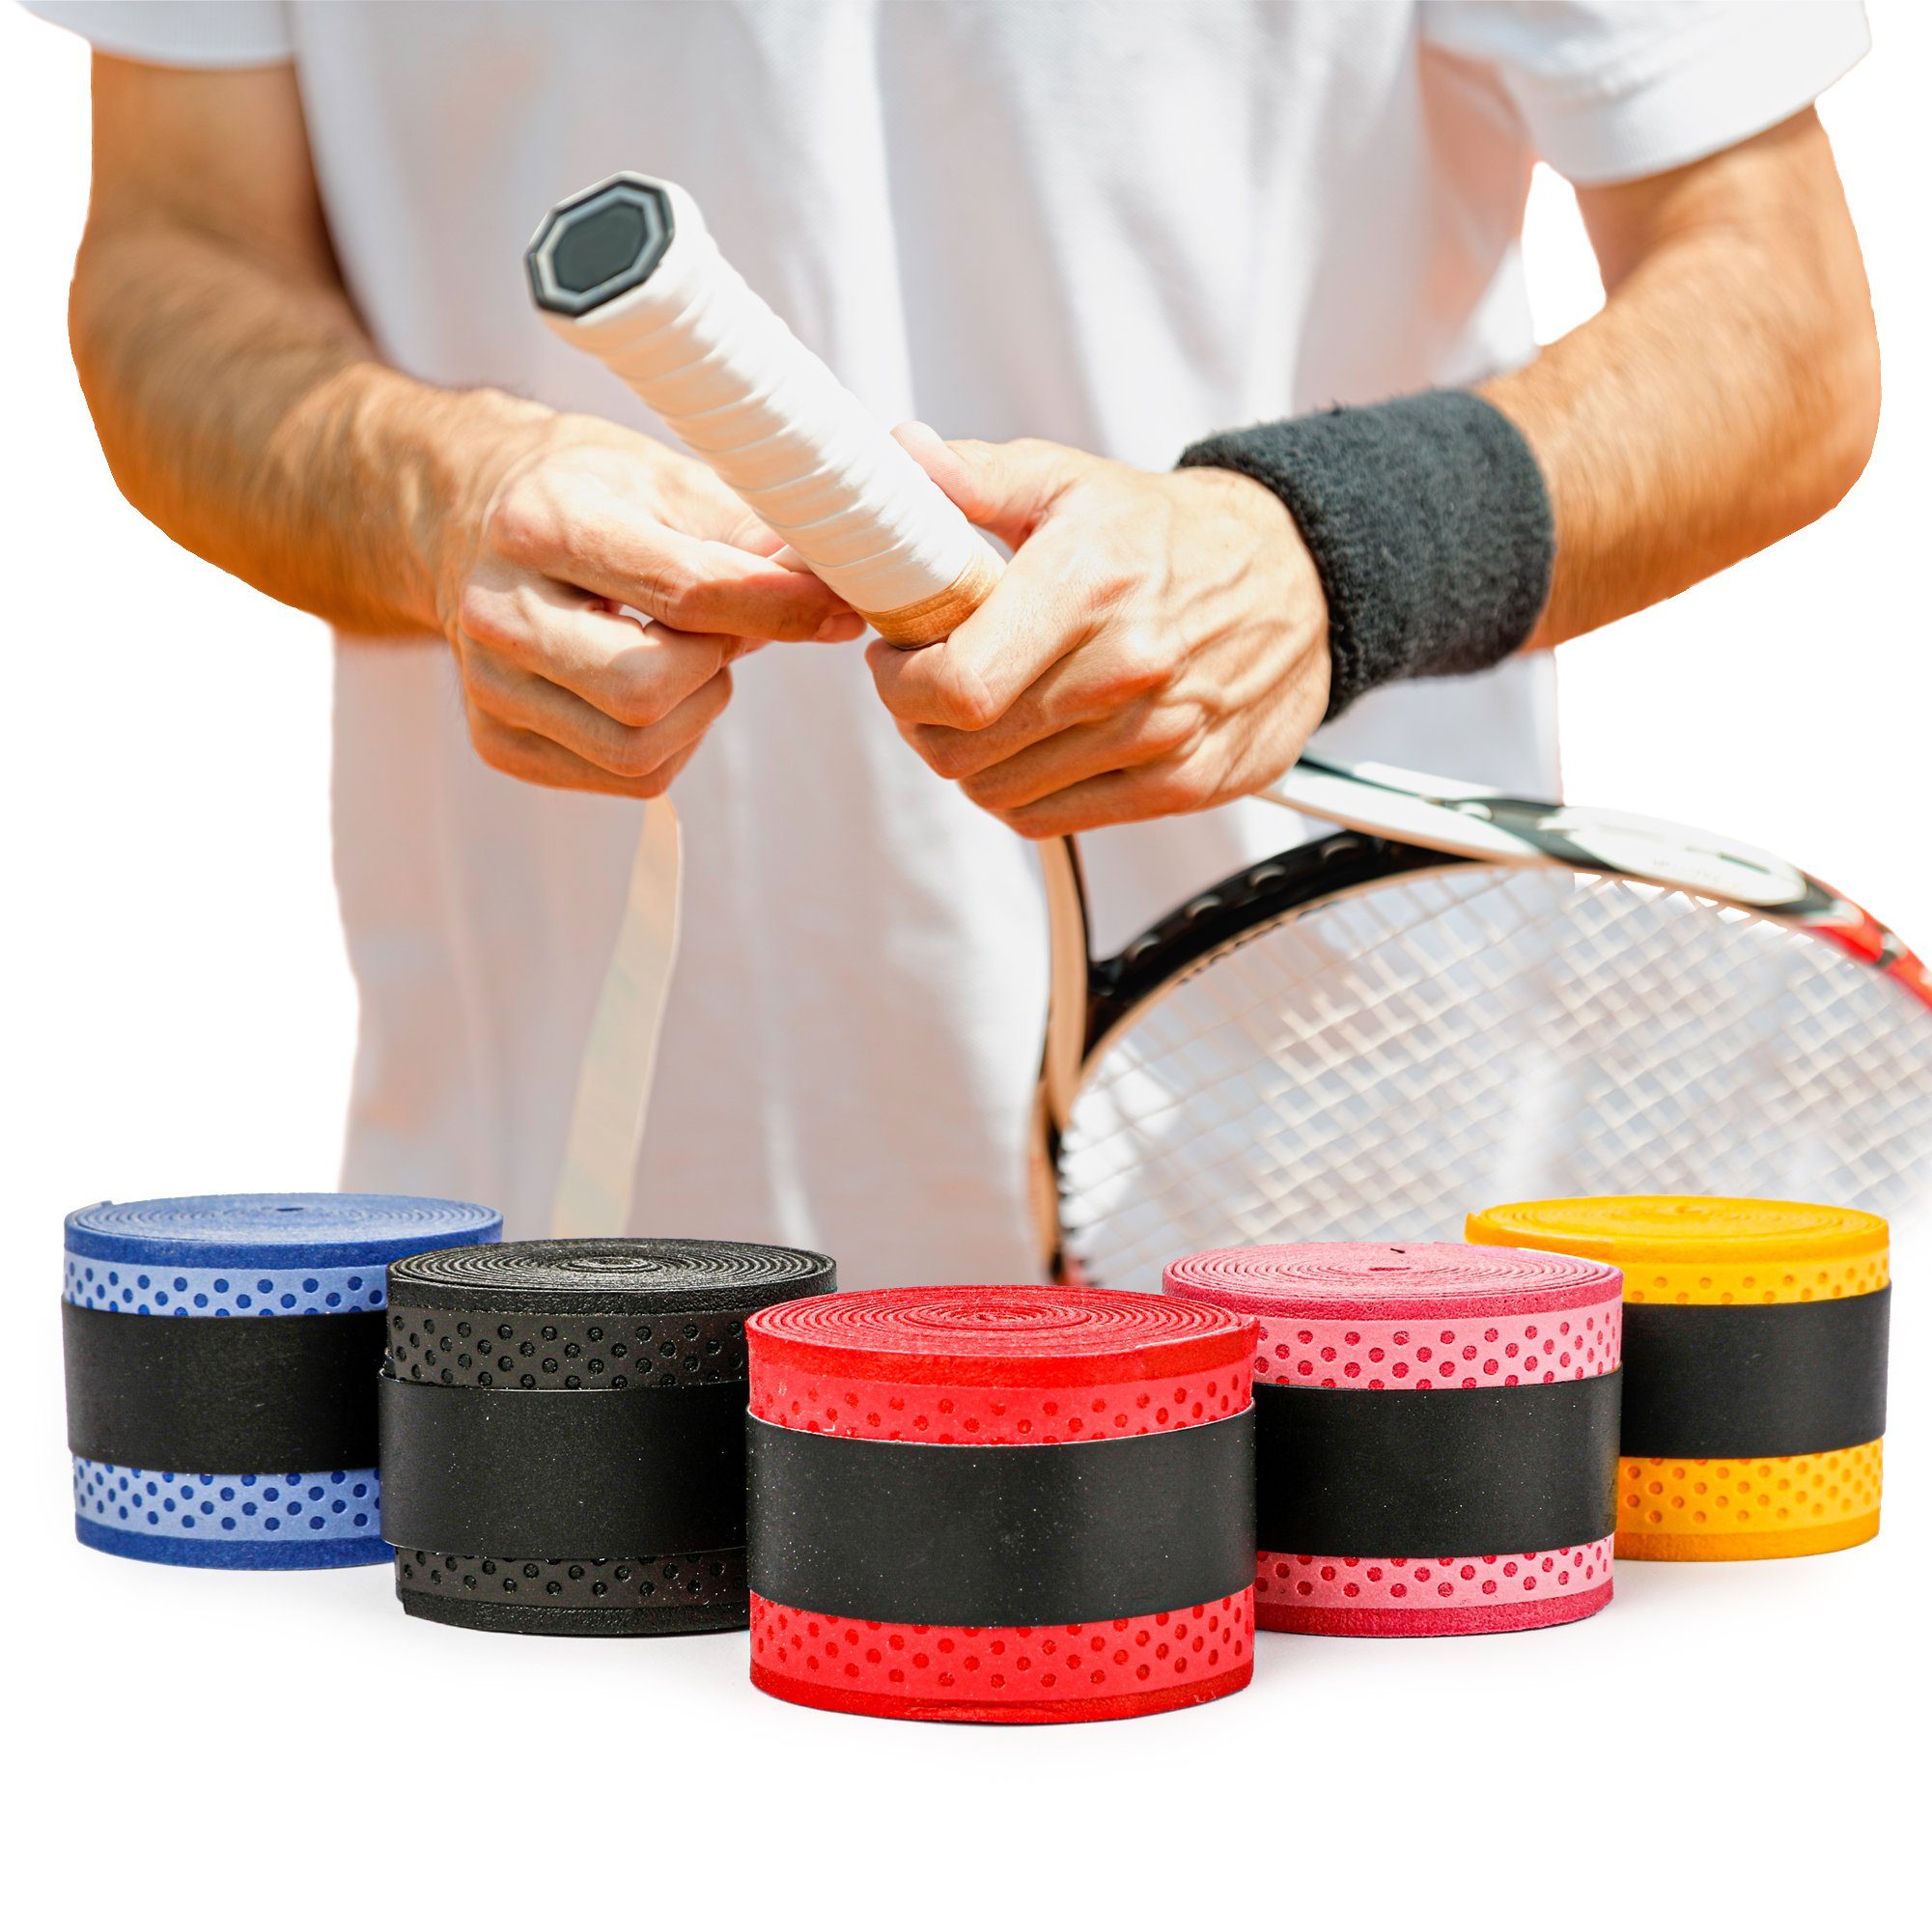 5x Anti Slip Schläger Über Grip Roll Tennis Badminton Squash Griffband ZufälXKD 